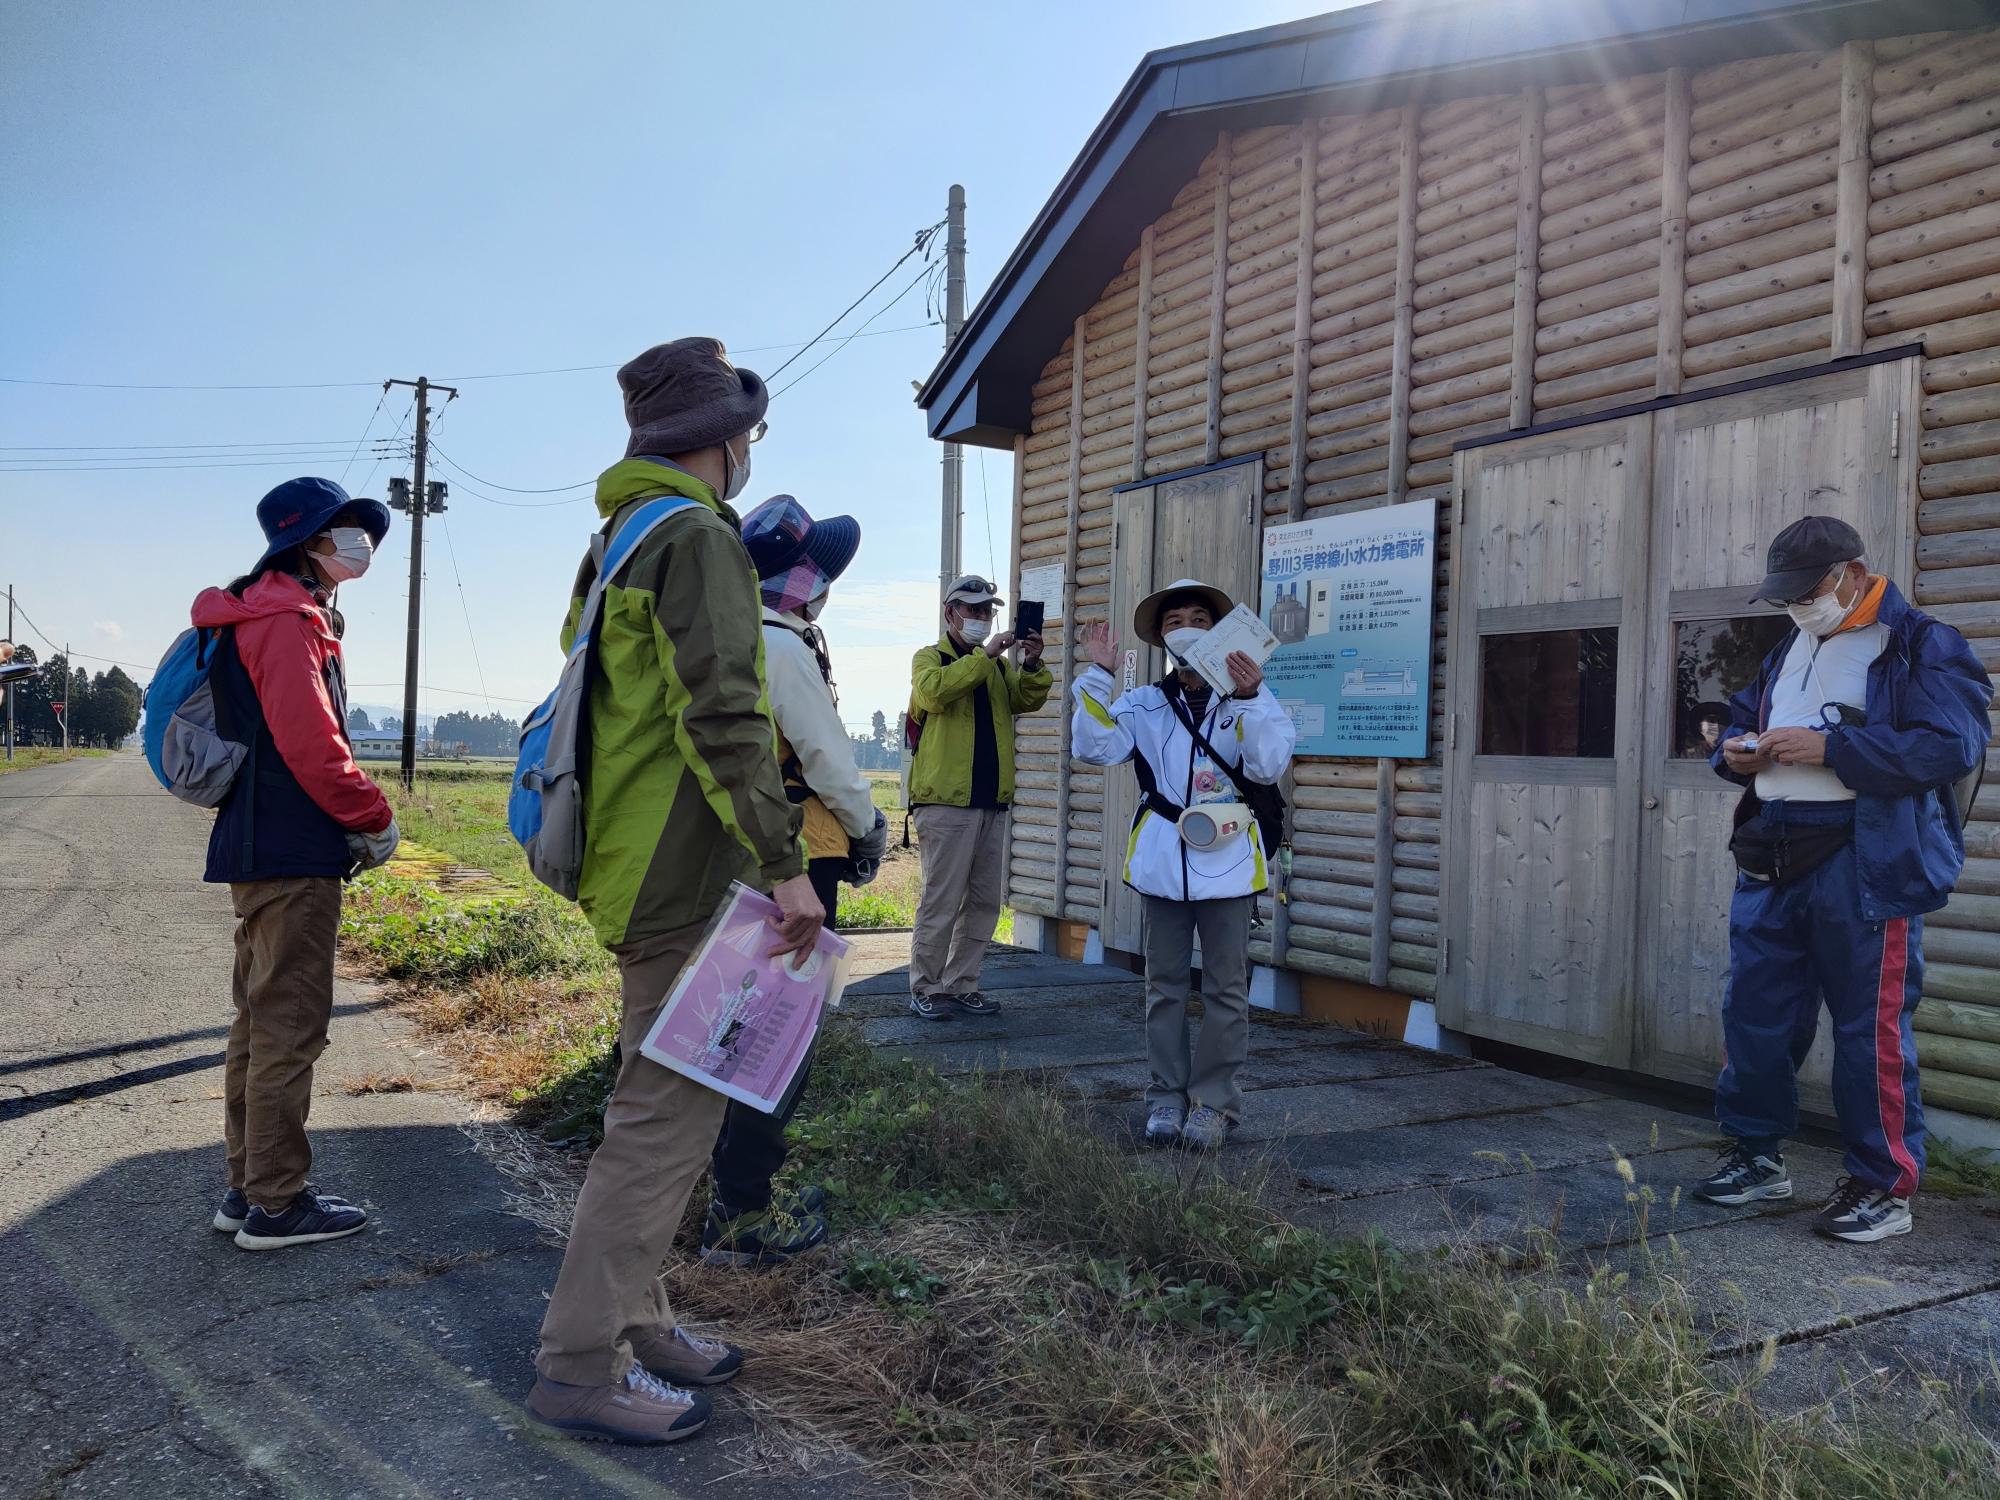 小水力発電所の建物の前で、参加者の方々がガイドさんの説明を聞いている様子の写真